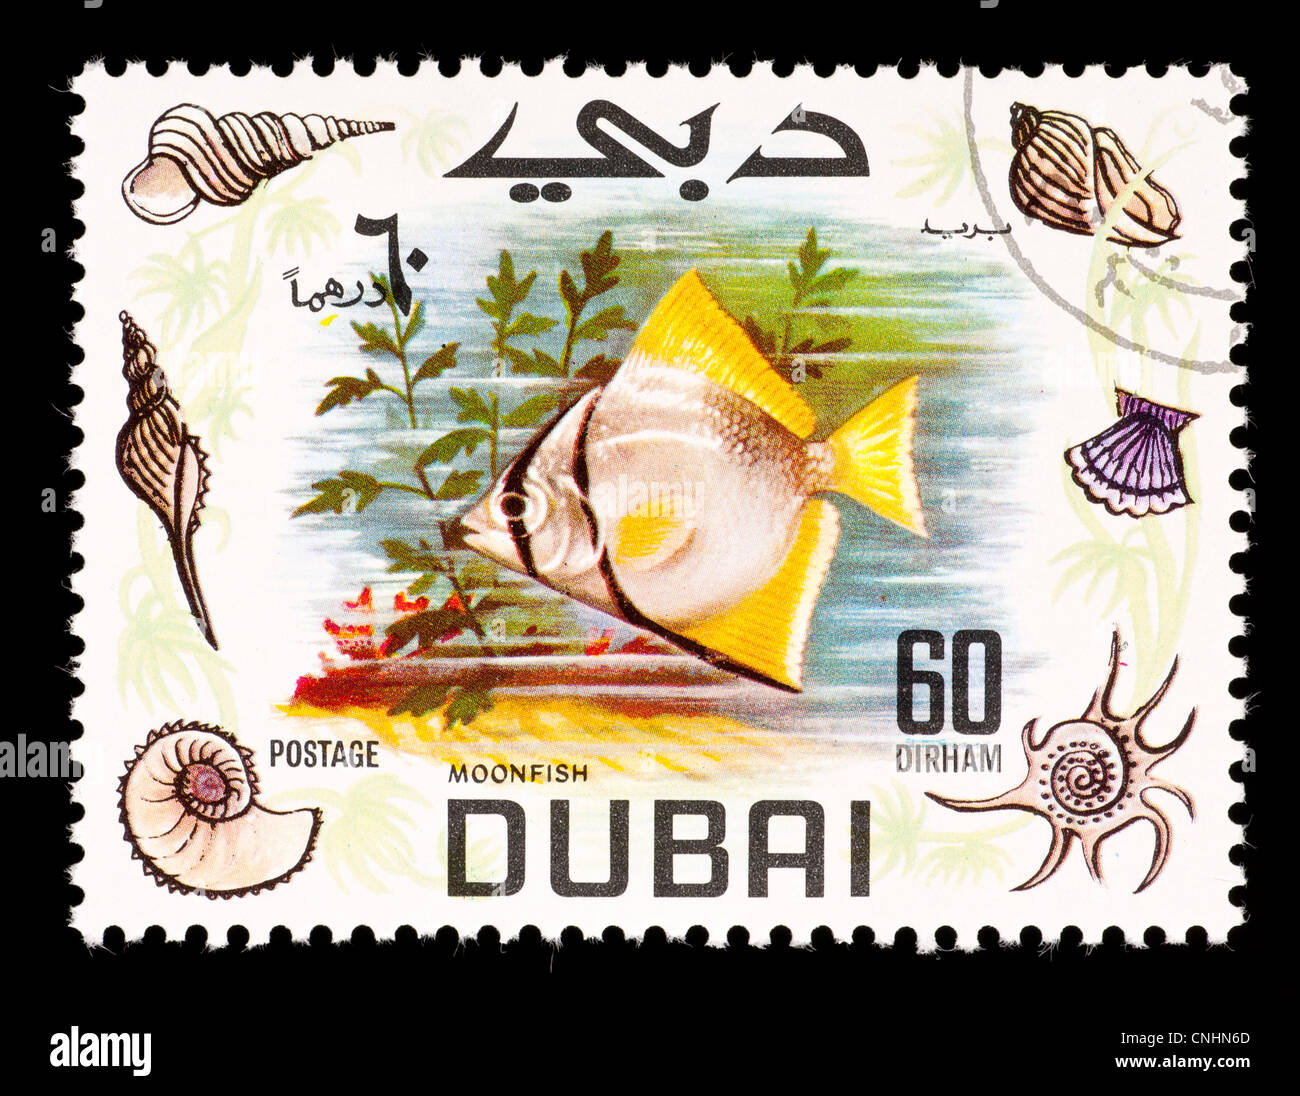 Timbre-poste représentant un moonfish de Dubaï. Banque D'Images